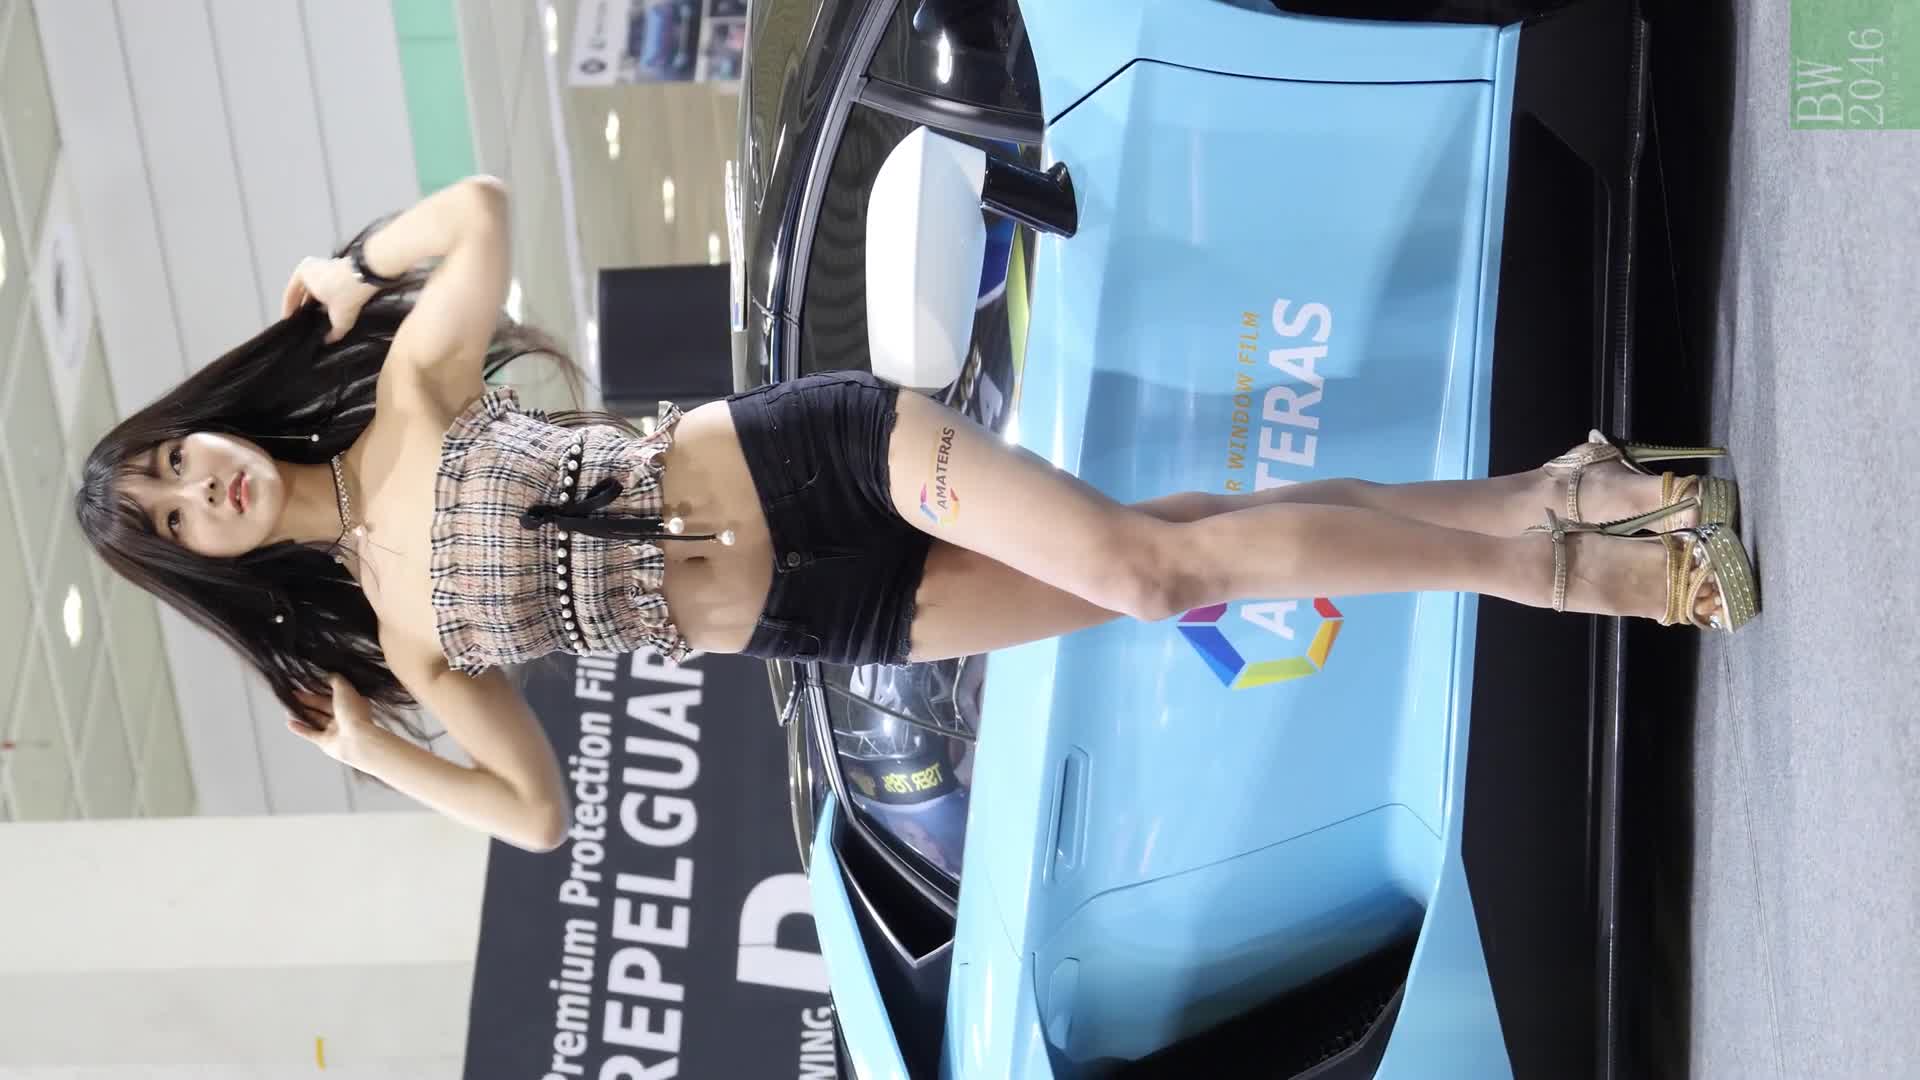 서울오토살롱 2018  SEOUL AUTO SALON 2018 – 최슬기 Choi Seul Gi 崔瑟琪, Racing Model 레이싱모델 RQ 車模 車展女模 35  H